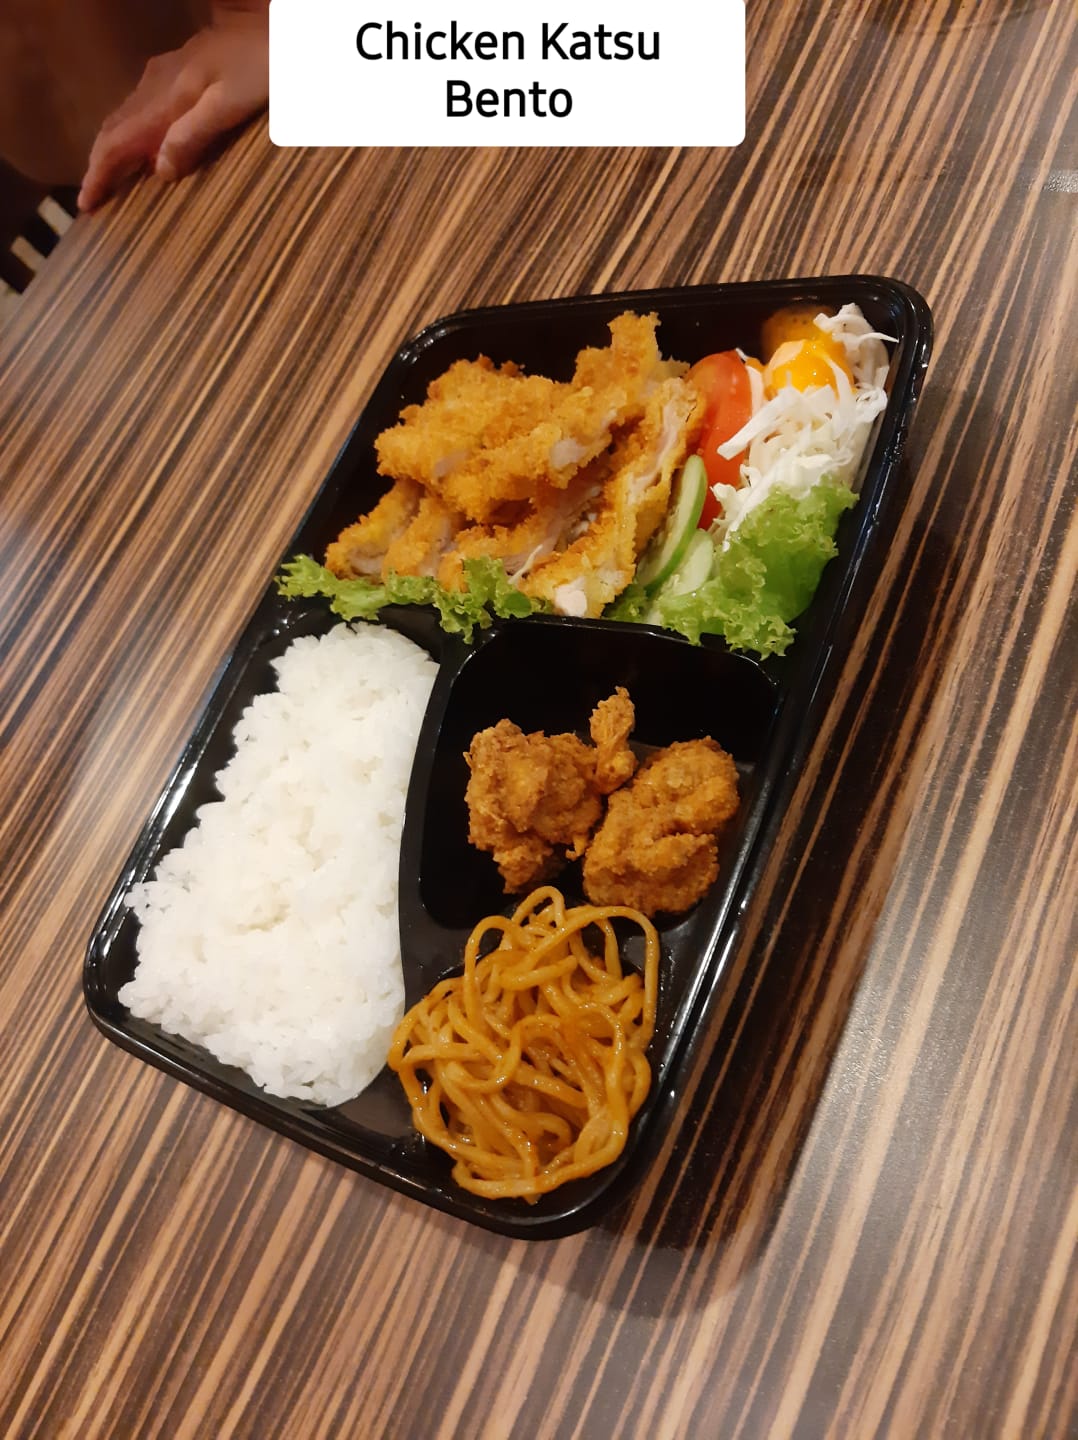 Chicken Katsu Bento 35 (Atami)